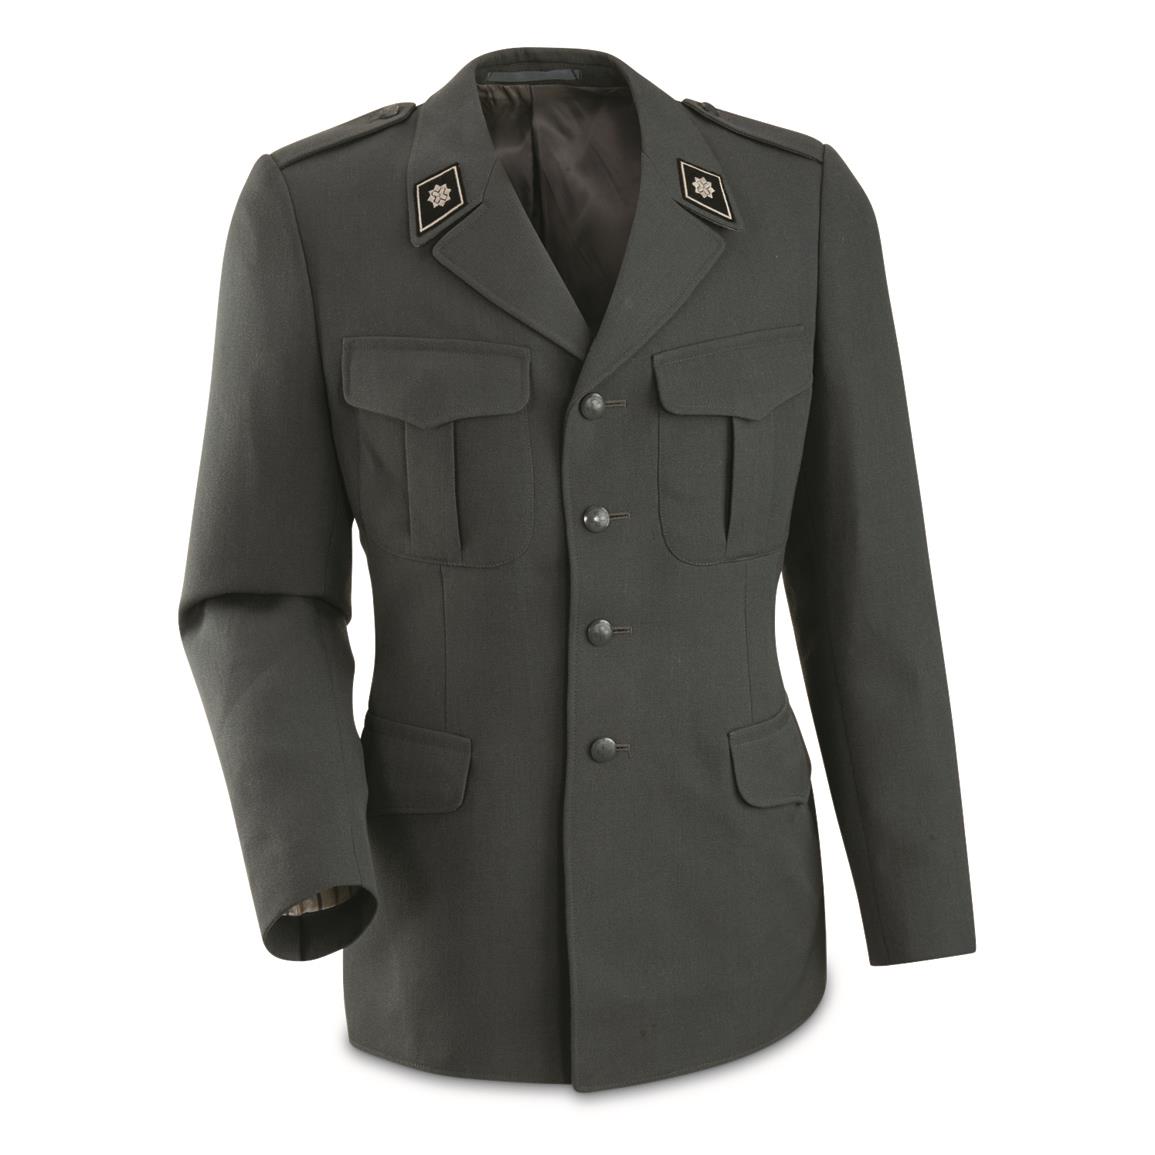 Swiss Military Surplus Dress Jacket, Used, Olive Drab